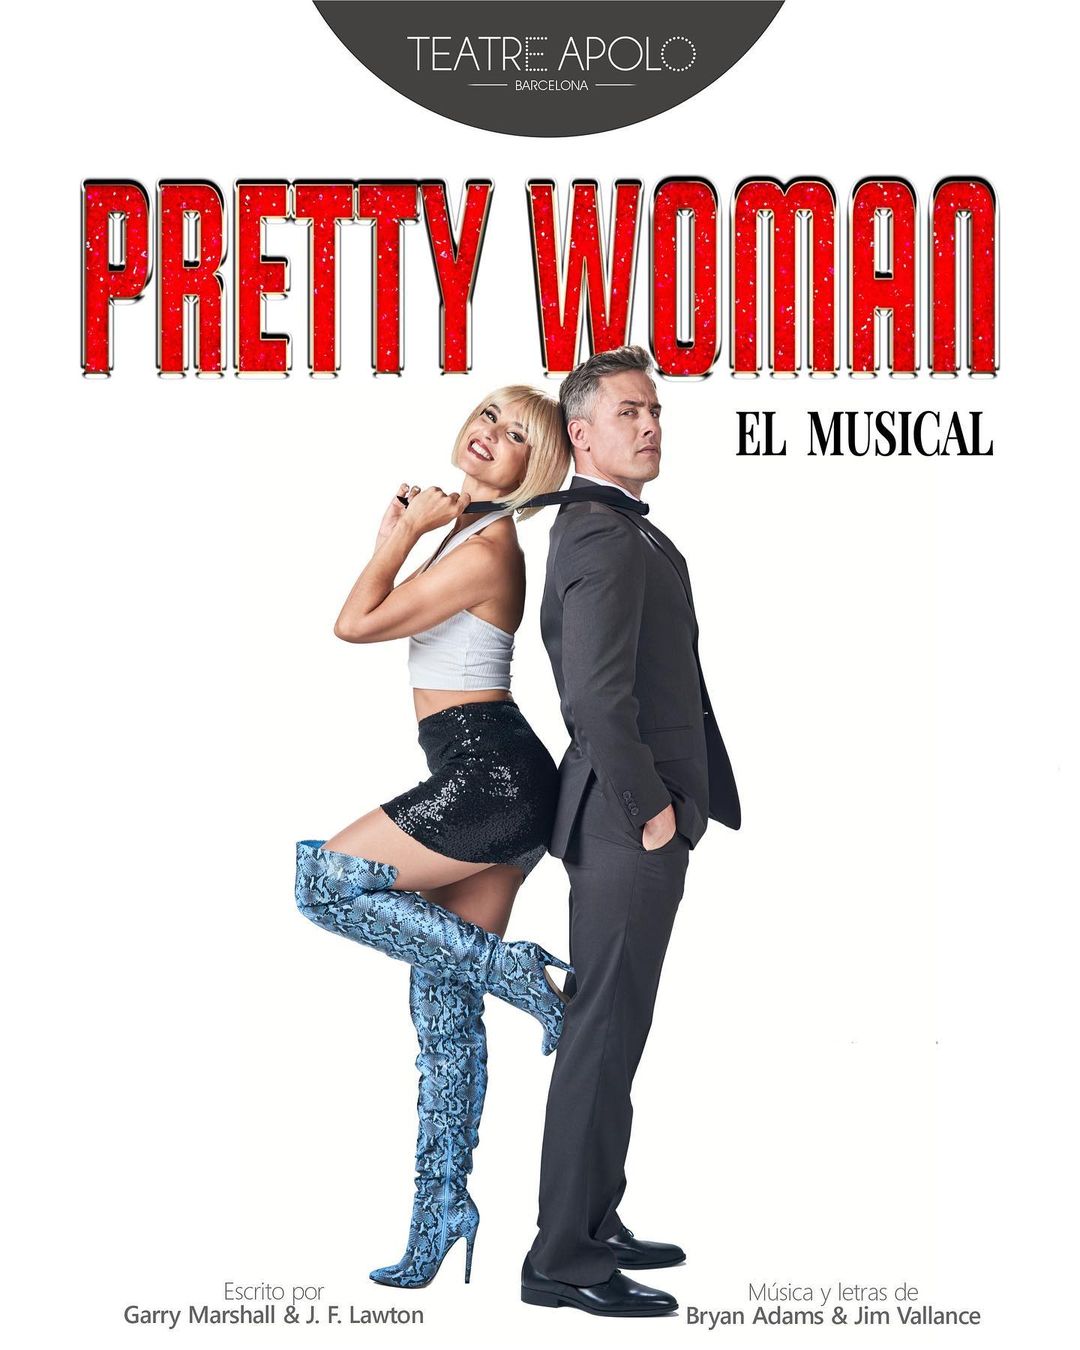 “Pretty Woman, el musical” – Últimas semanas